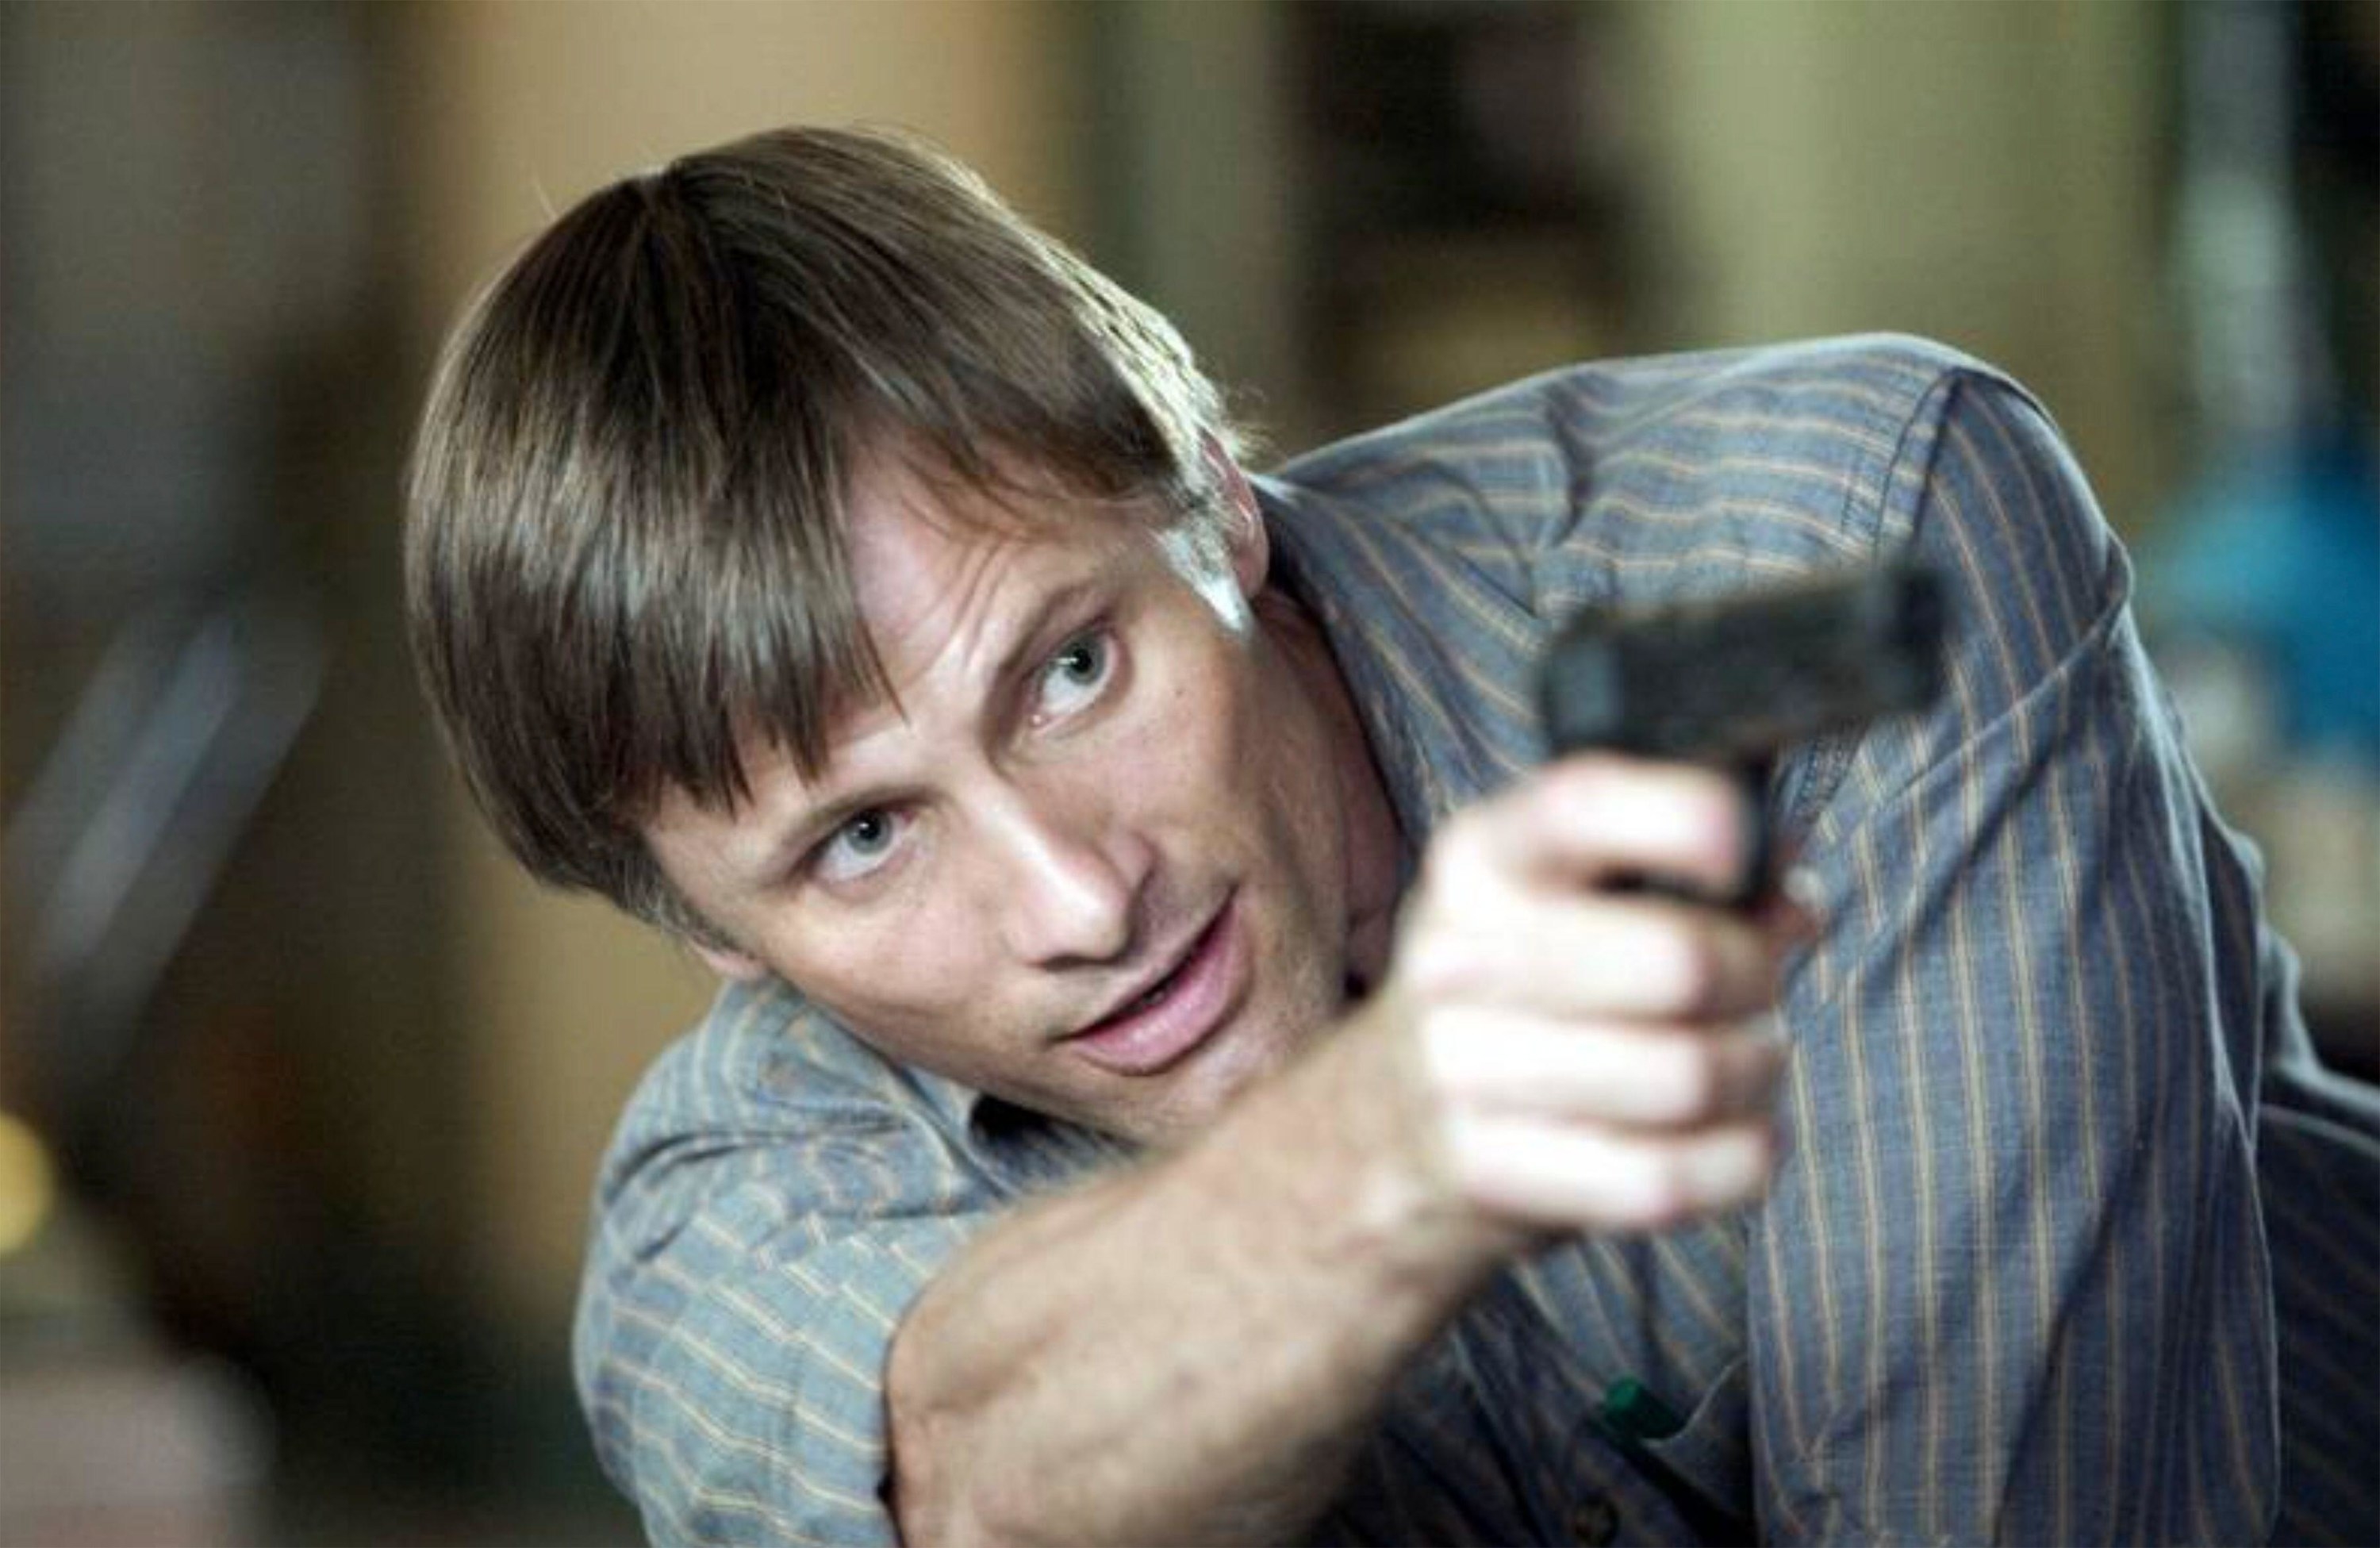 A man in a striped, button-up shirt begrudgingly points a gun at a threat